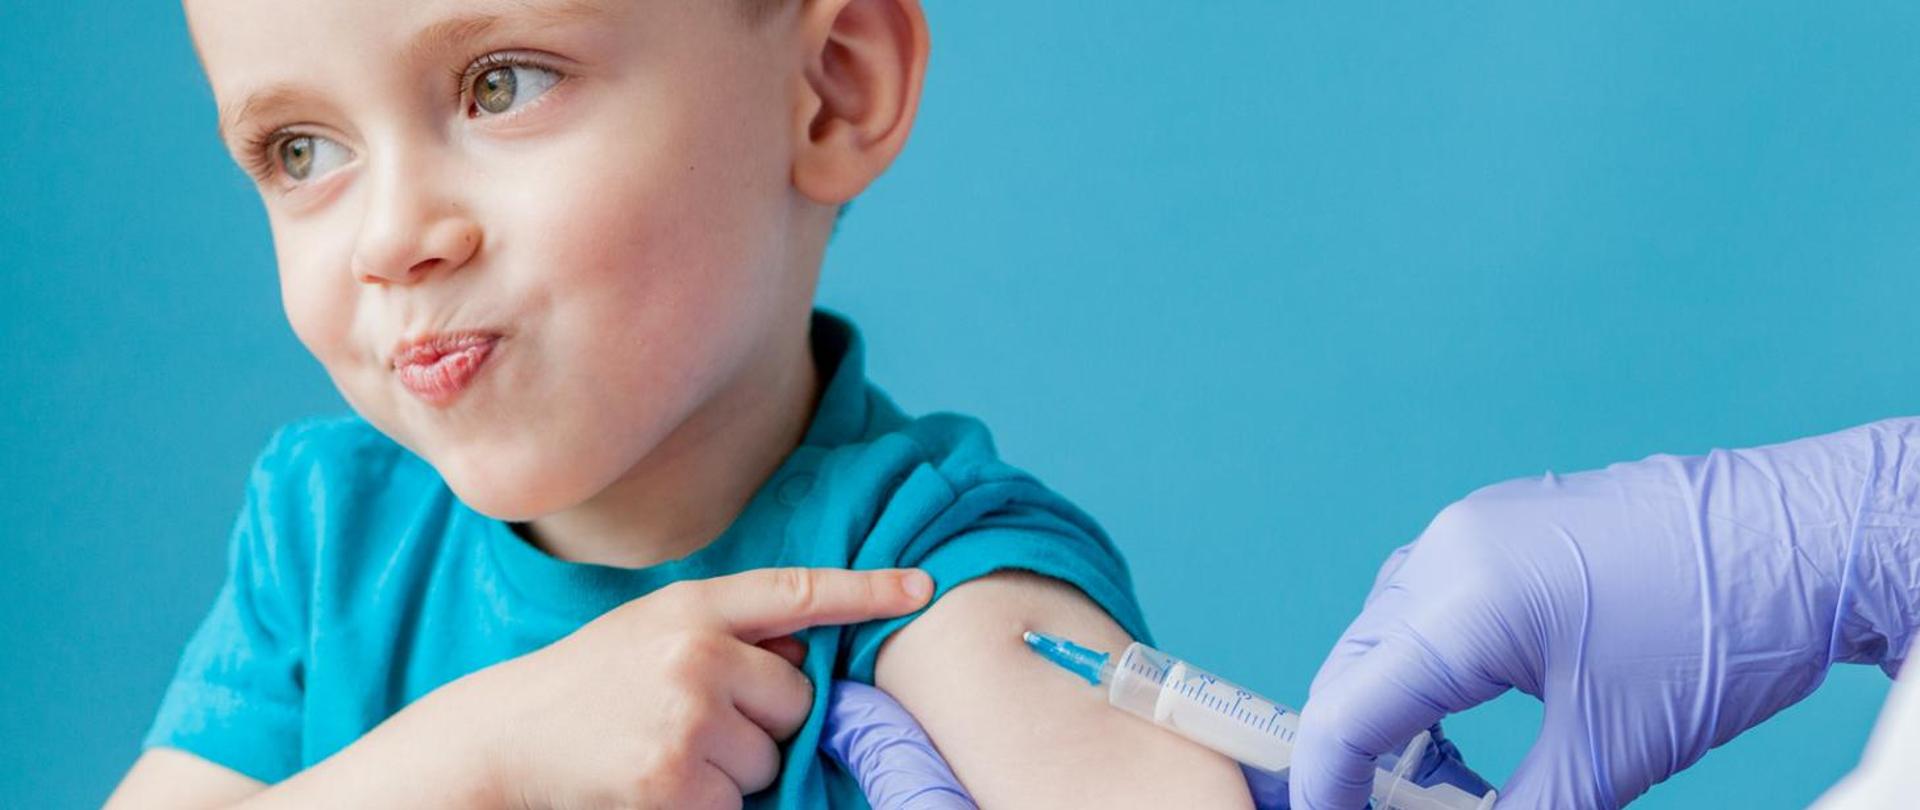 zdjęcie przedstawia chłopca podczas szczepienia